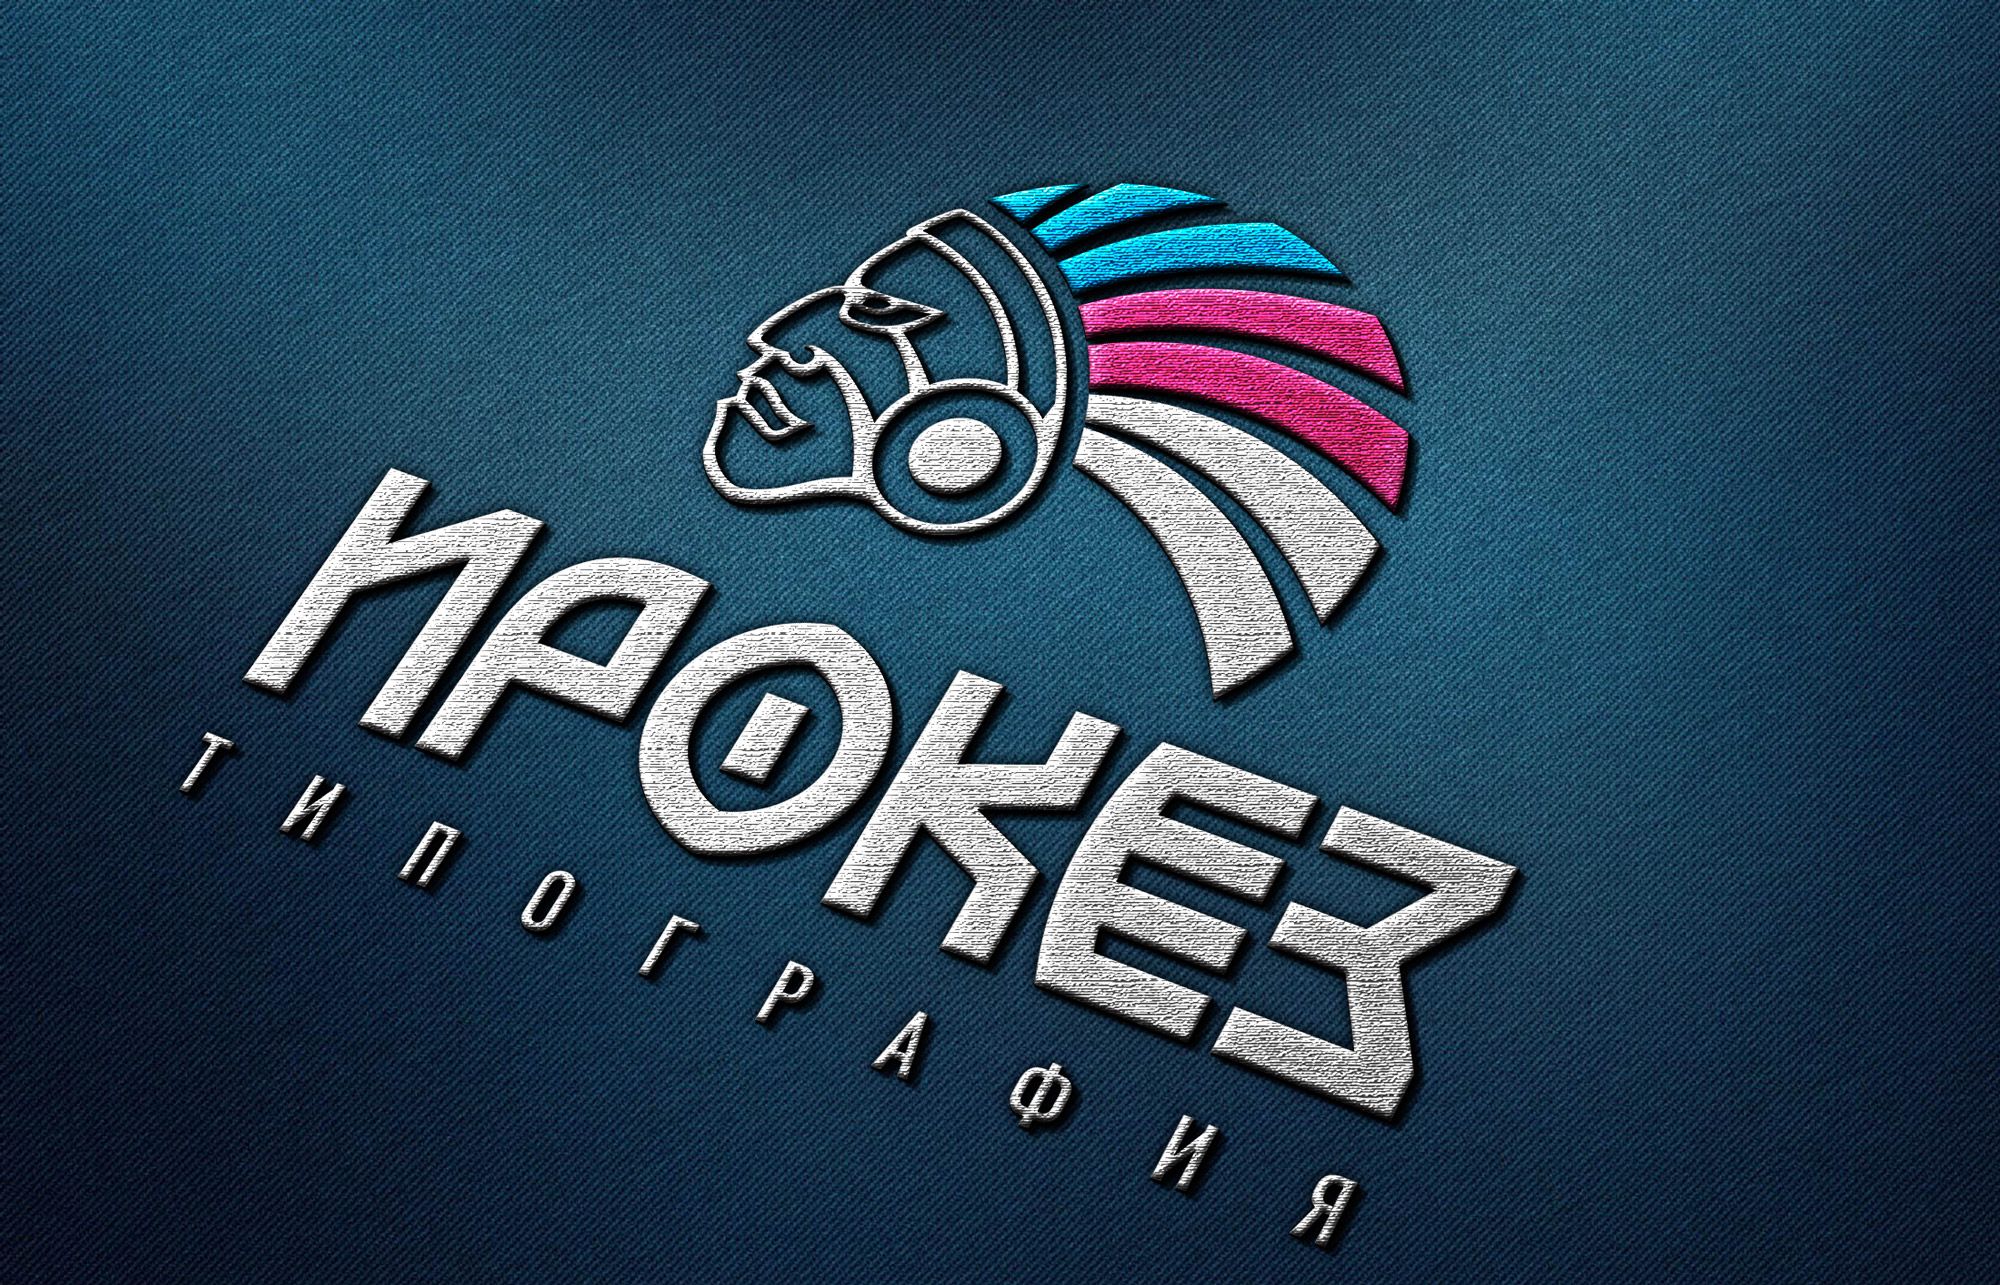 Редизайн лого и дизайн ФС для типографии Ирокез - дизайнер Ninpo